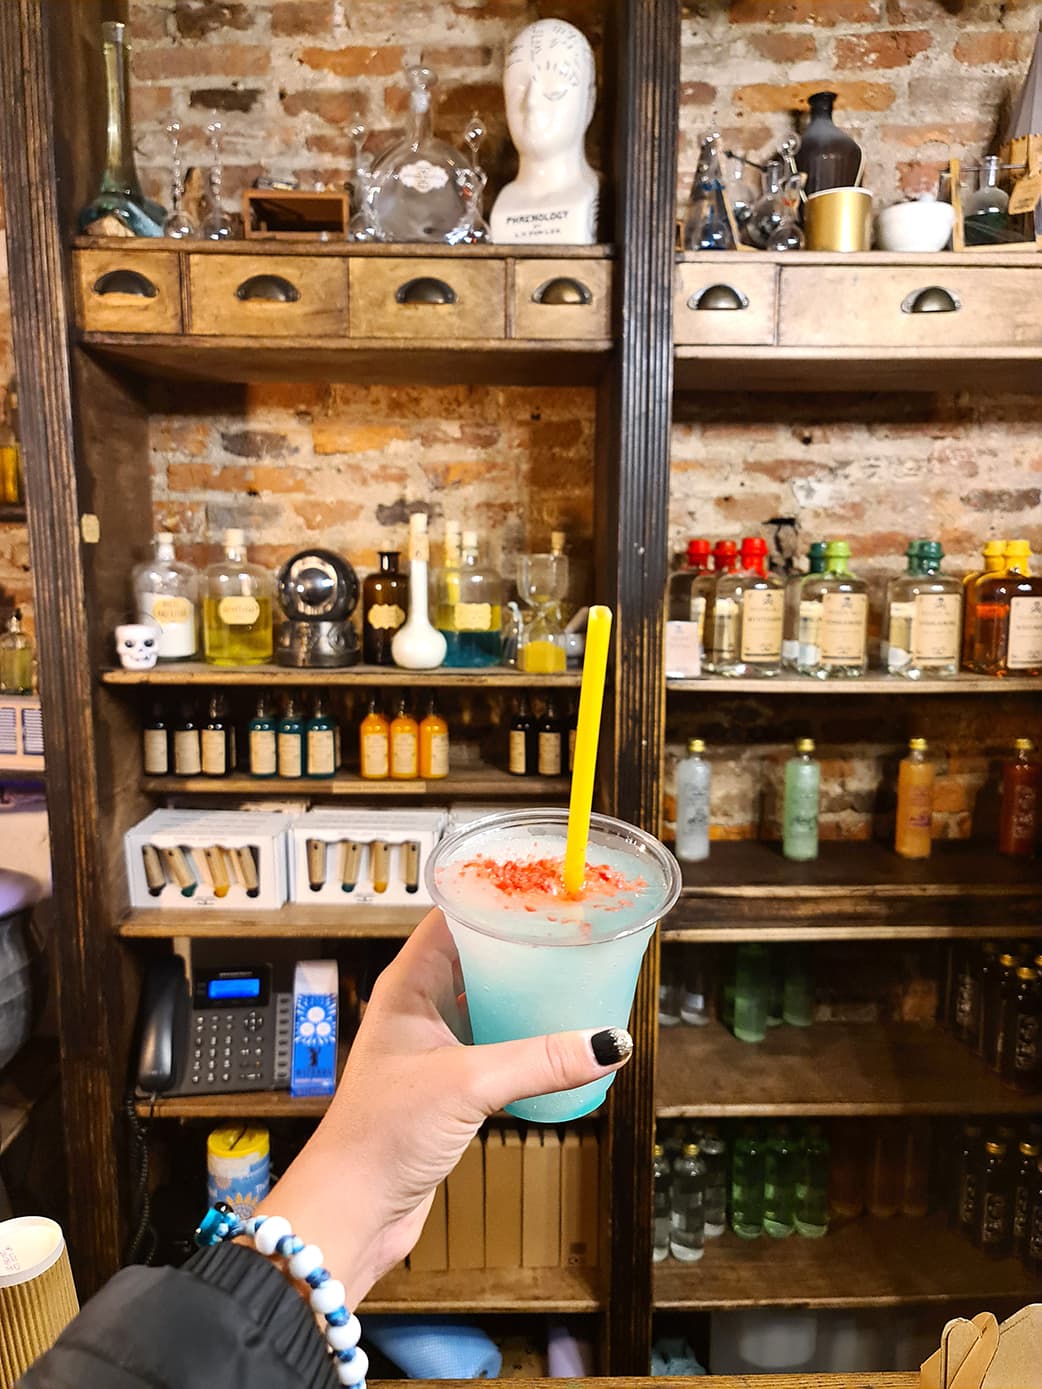 In foto si vede la mano di Carlotta mentre regge un bicchiere contenente una specie di cocktail colorato, sullo sfondo di una parete ricoperta di boccette e pozioni magiche